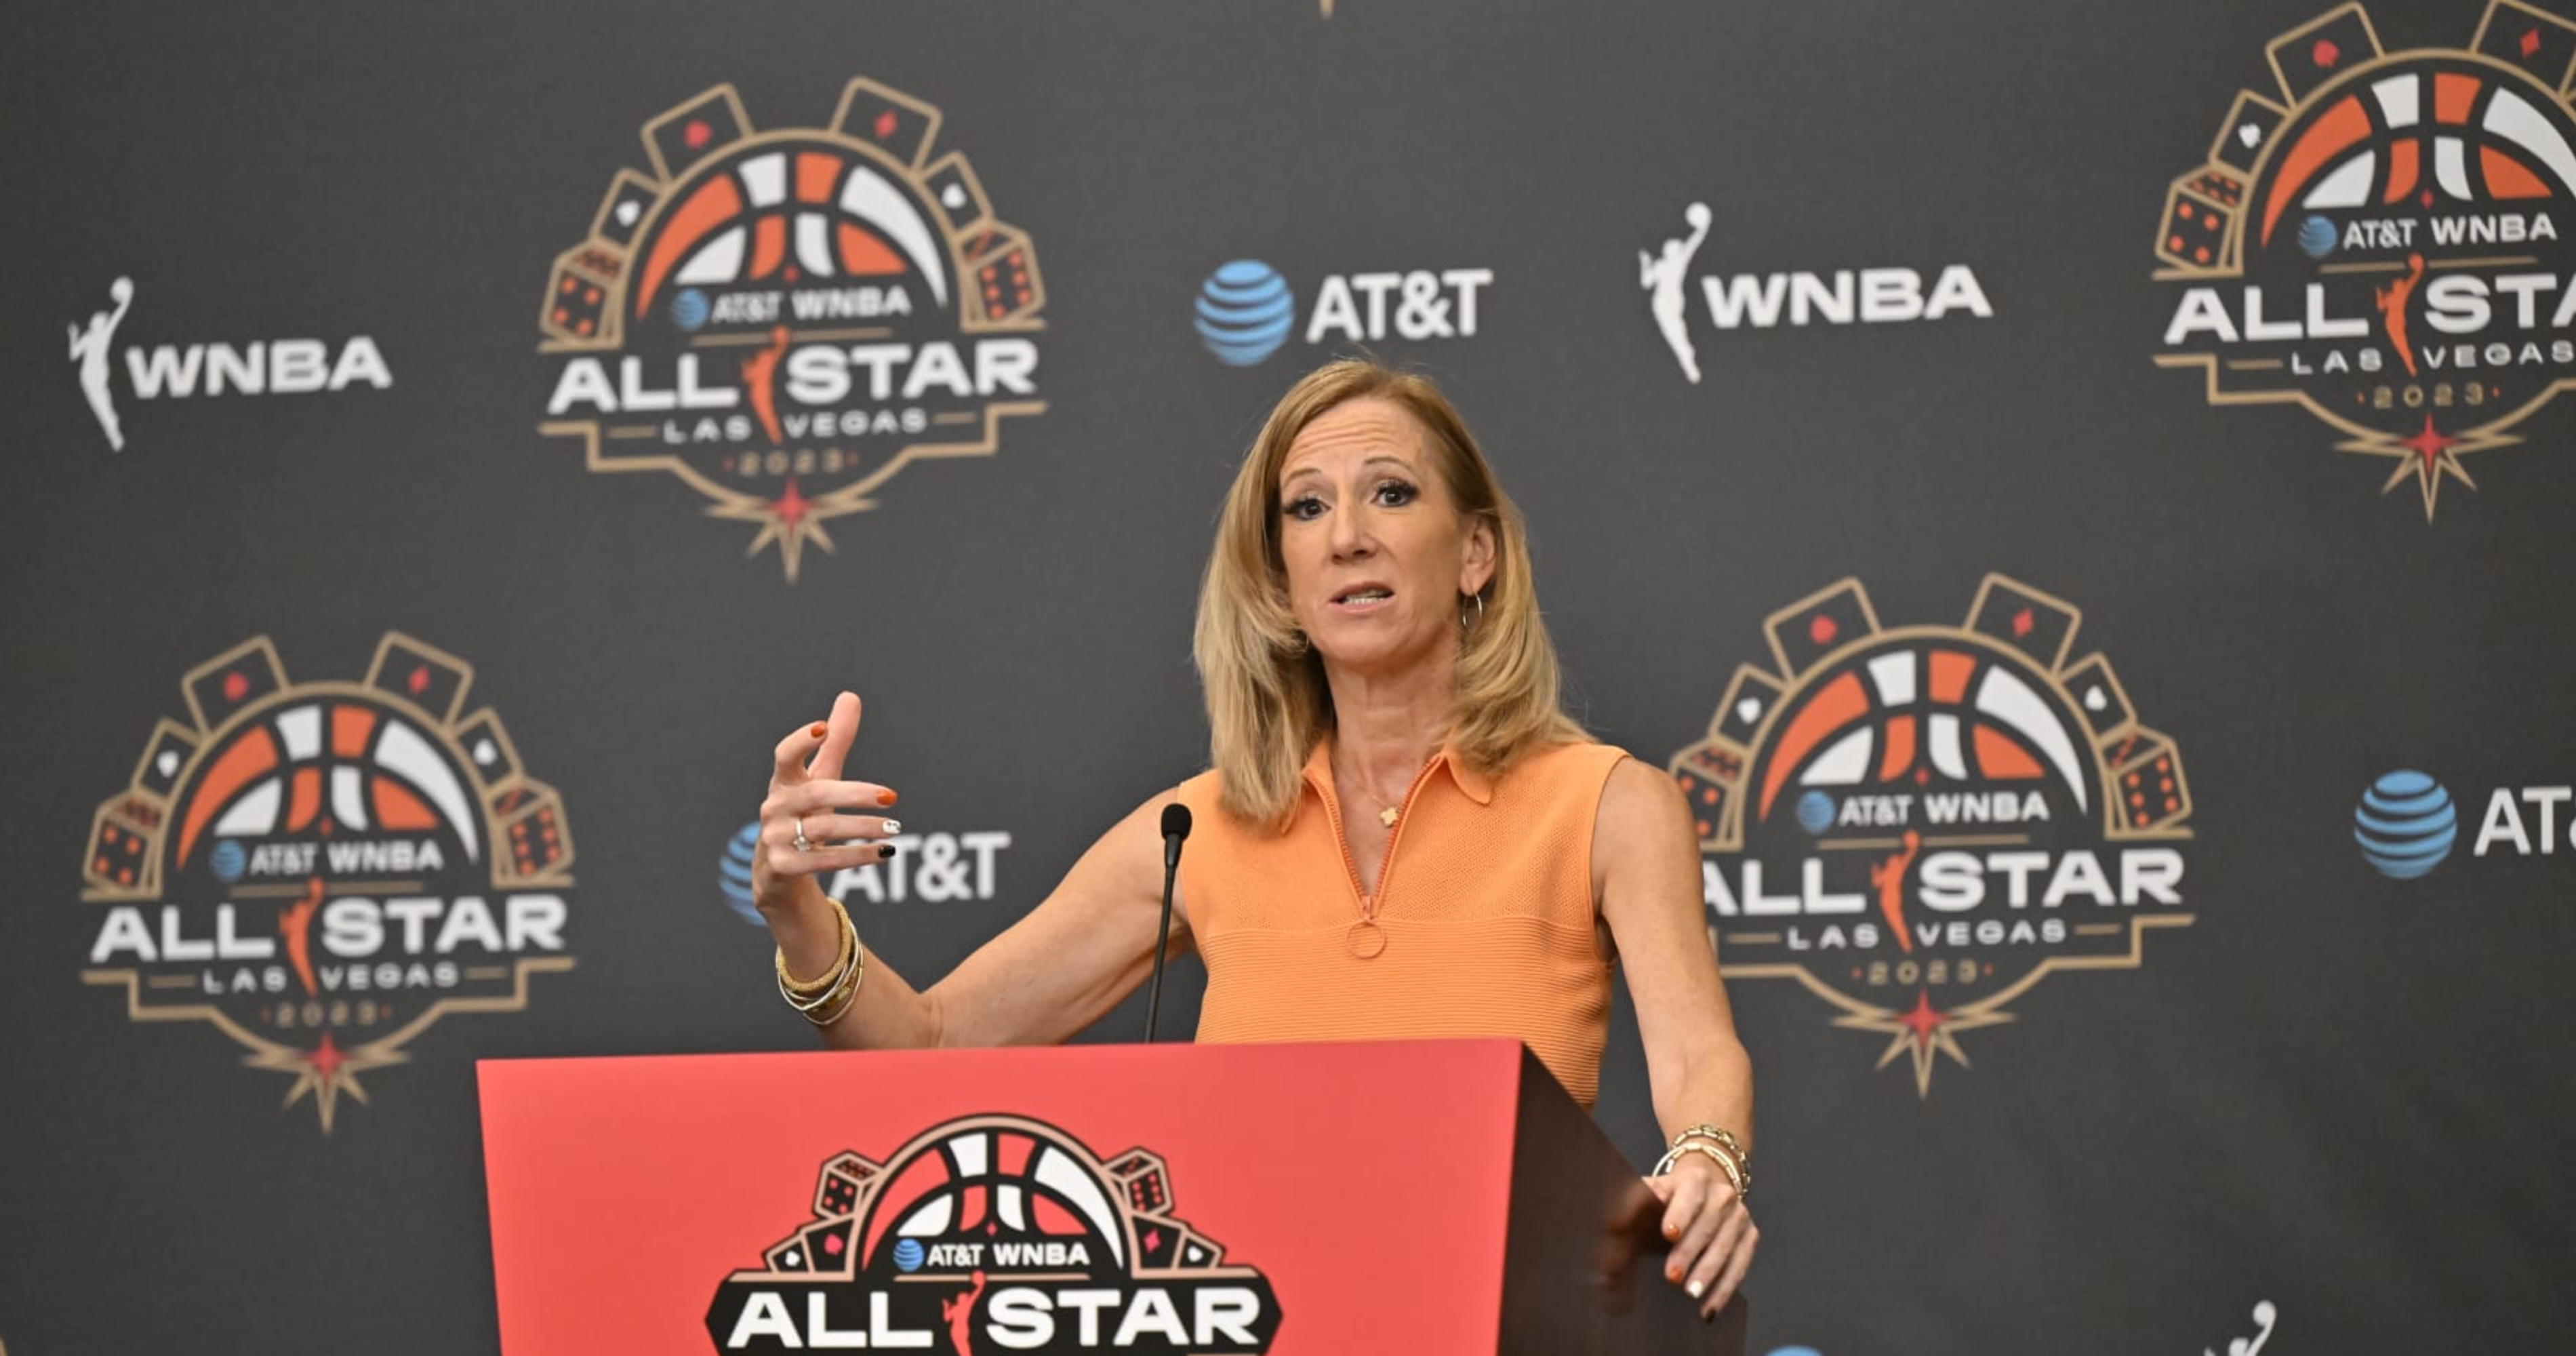 Phoenix to Host 2024 WNBA All-Star Game, Kathy Englebert Announces thumbnail